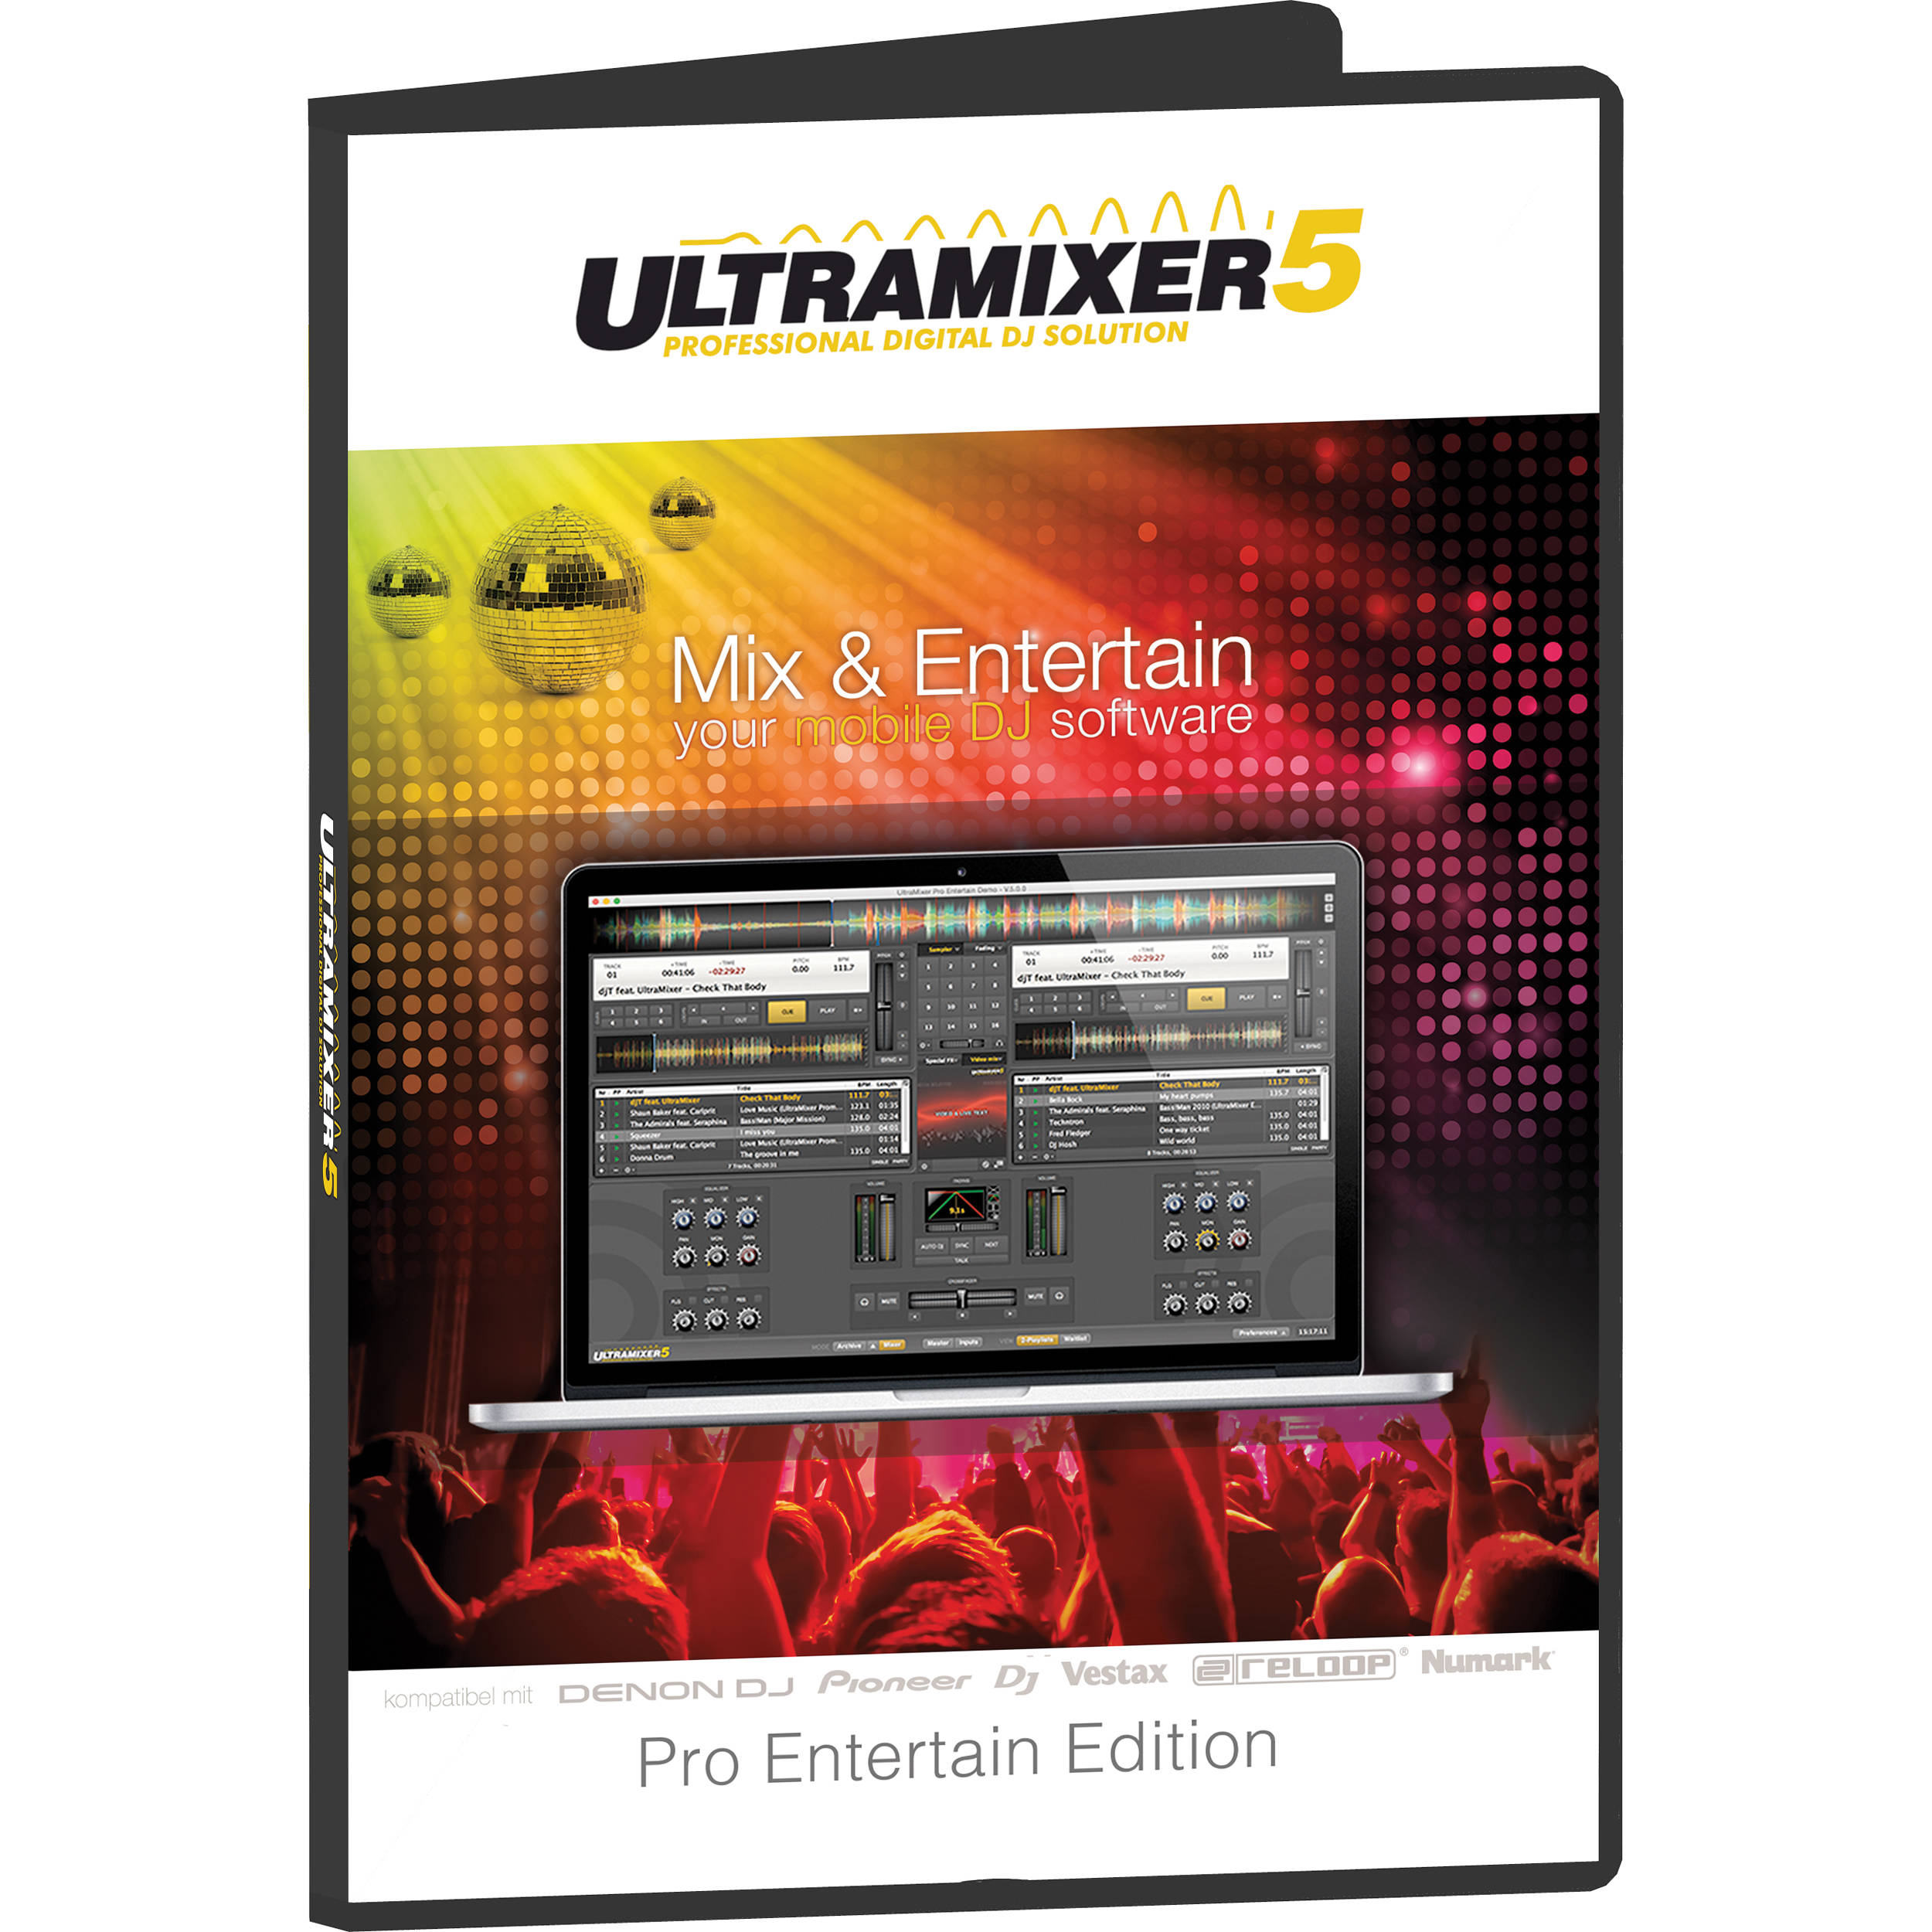 Ultramixer 5 Free Download